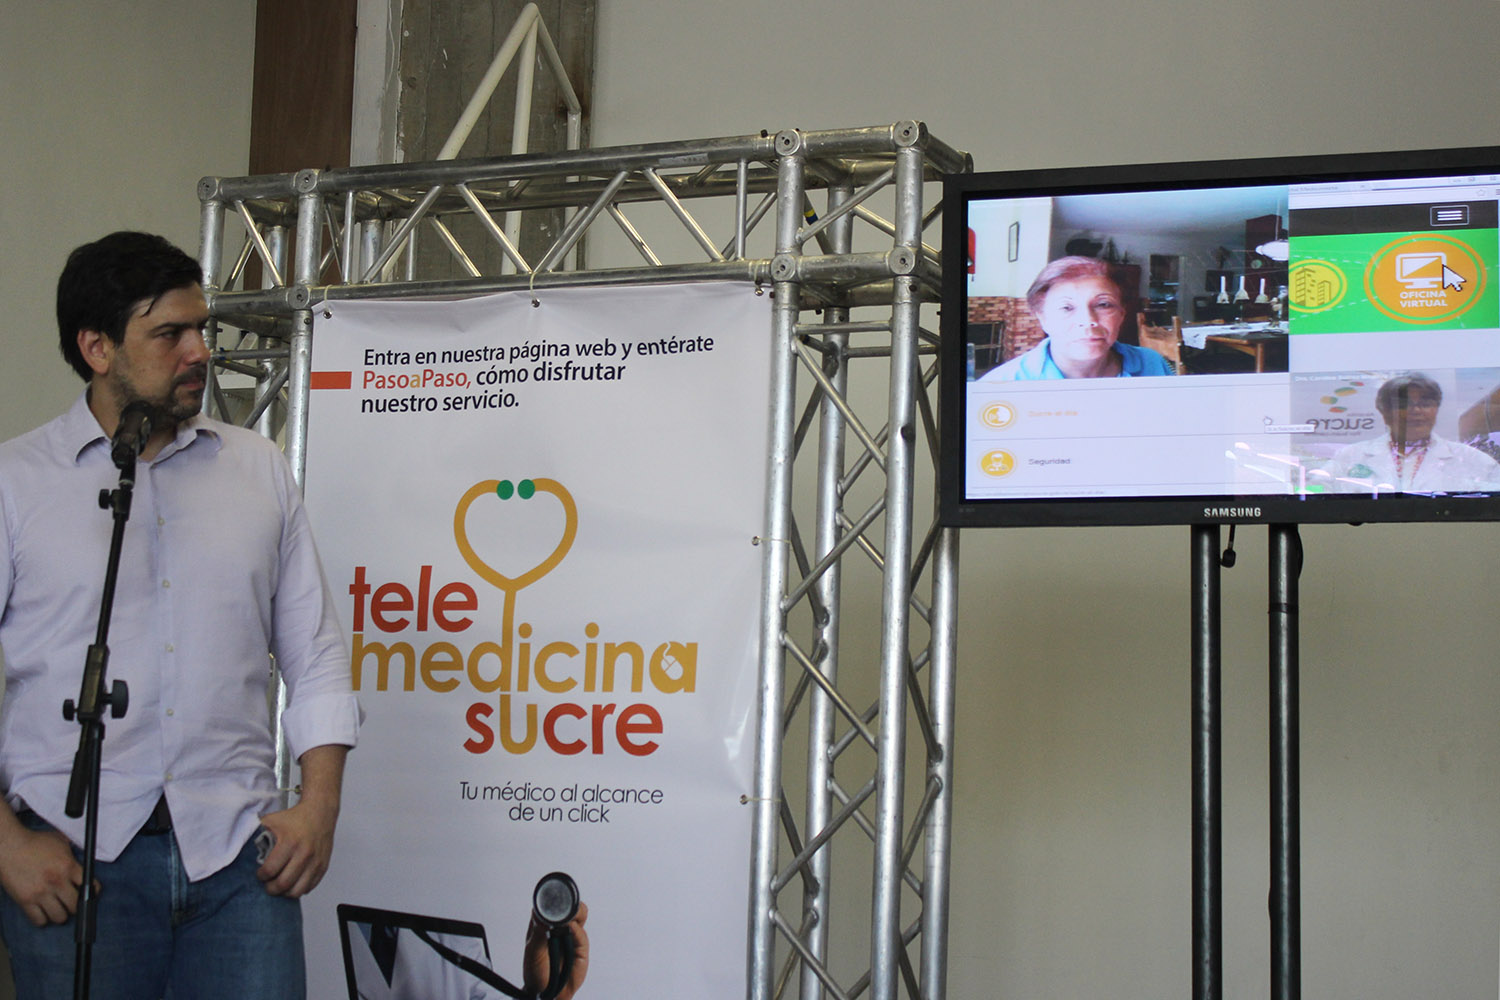 Telemedicina Sucre: El innovador programa de atención médica on line